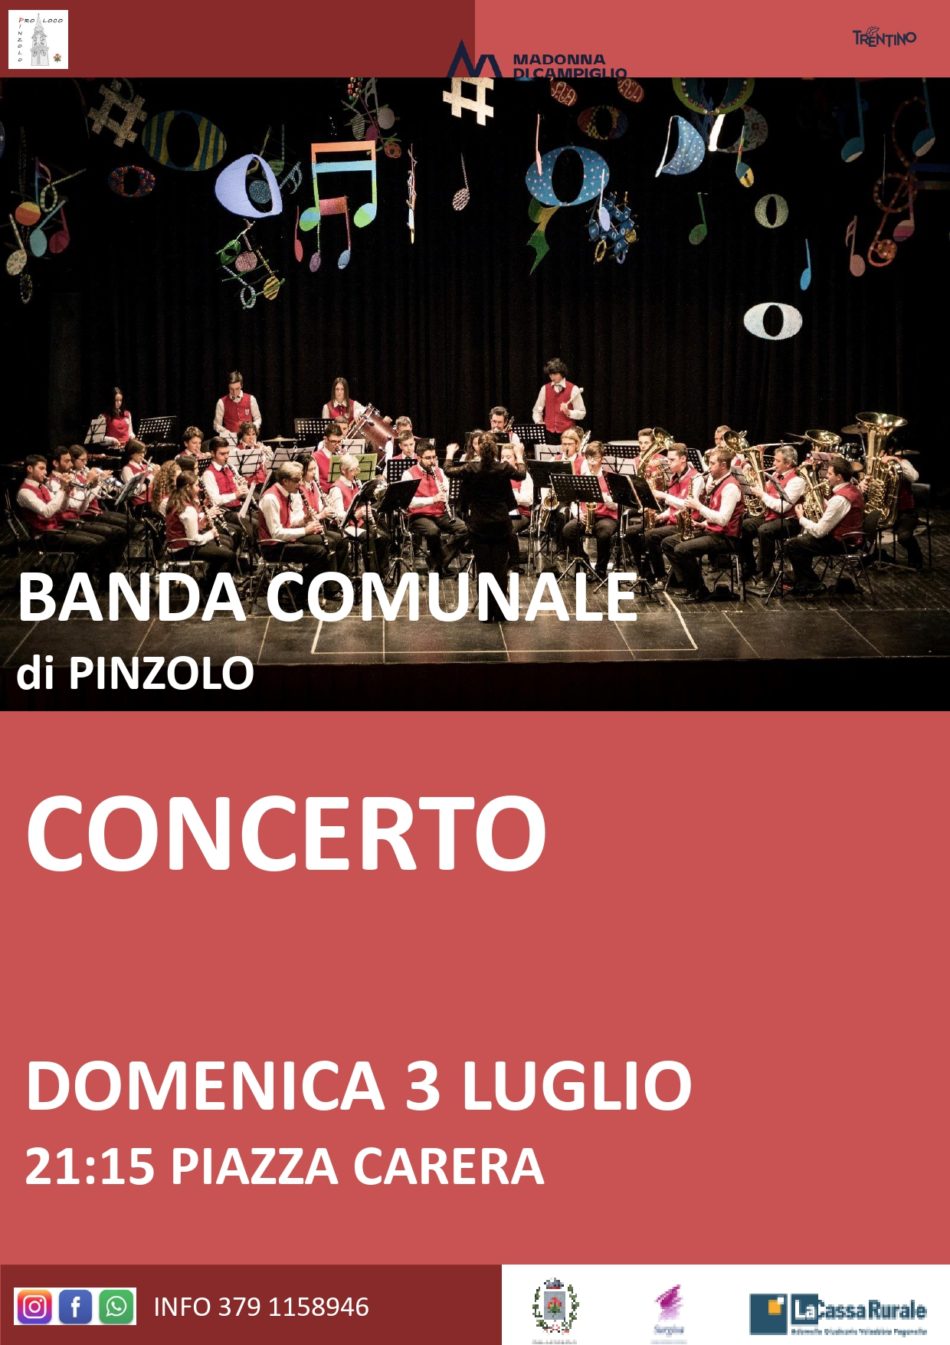 Domenica 3 luglio: Concerto della Banda Comunale di Pinzolo in piazza Carera